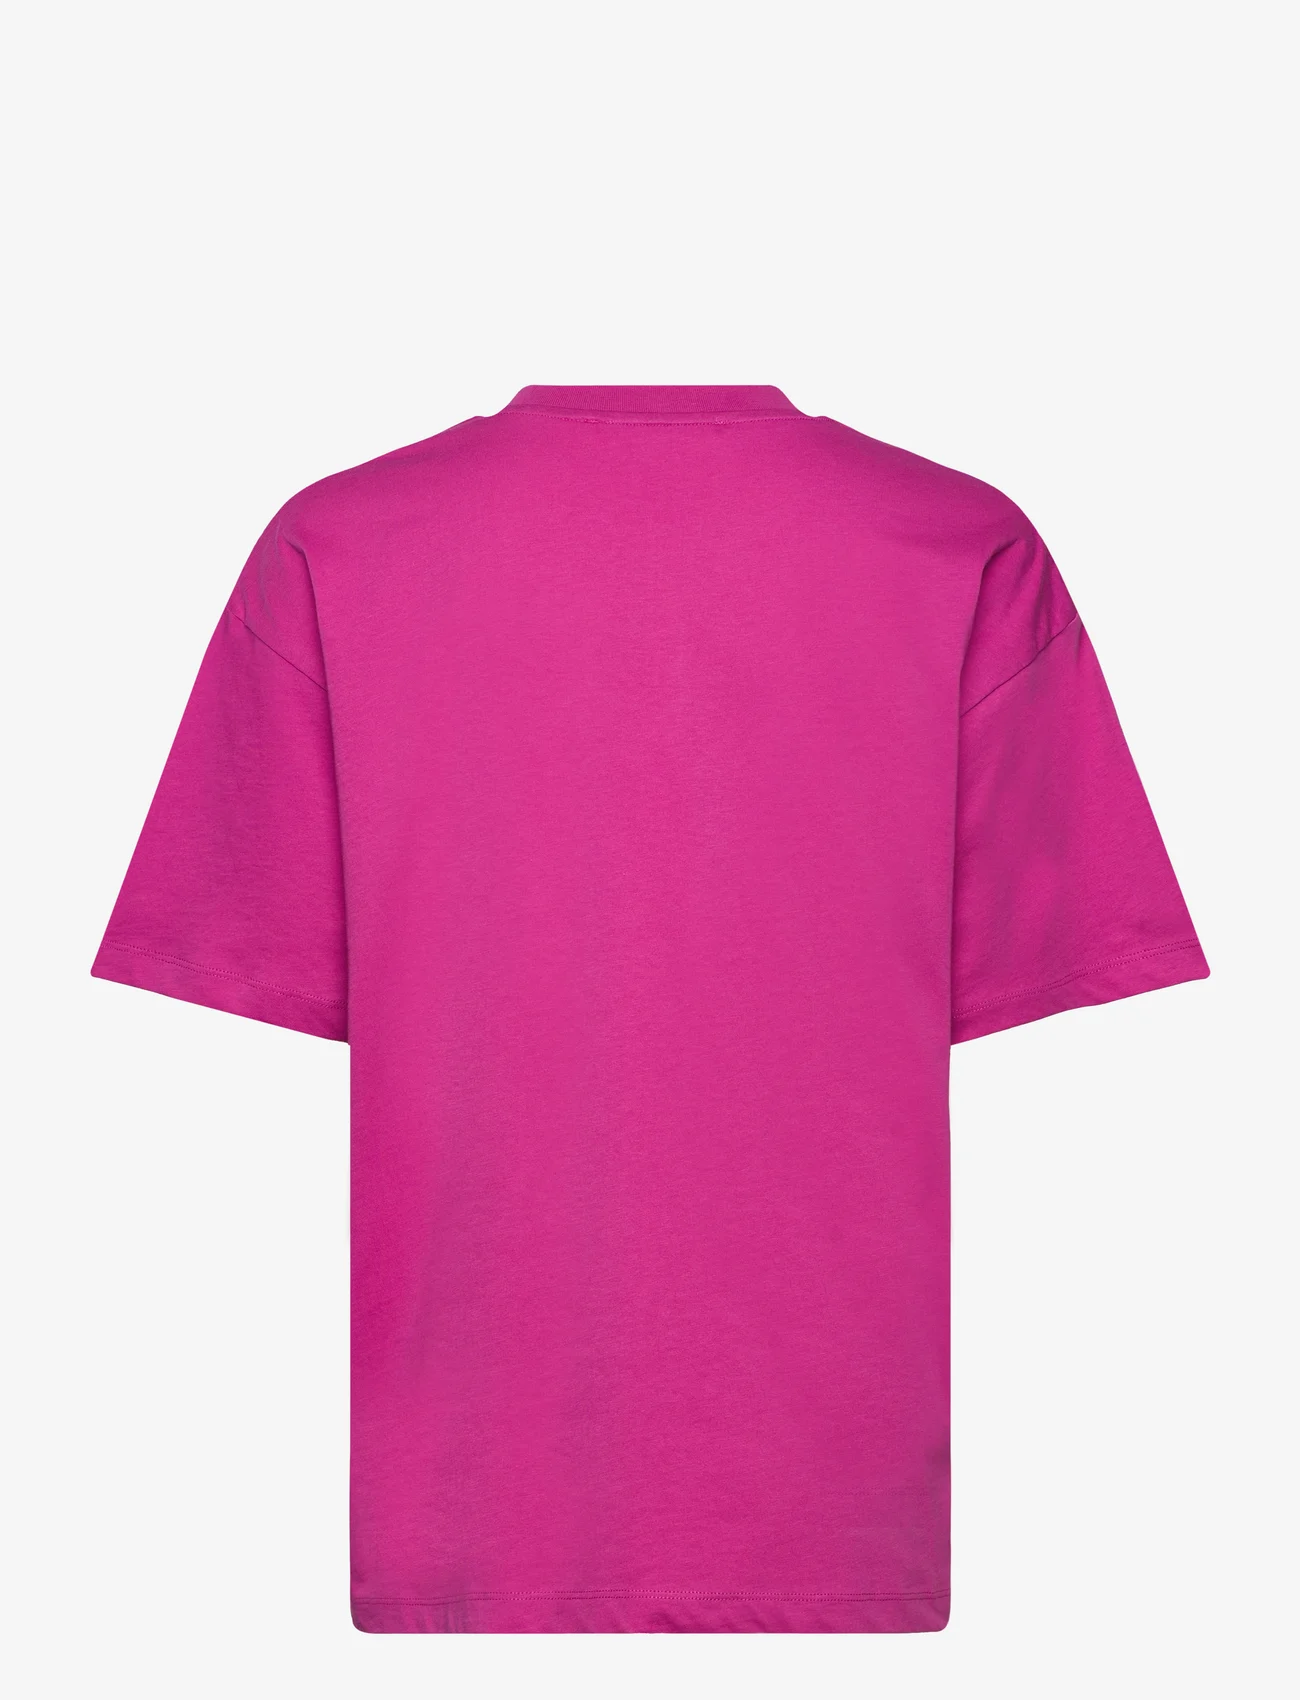 Samsøe Samsøe - Eira t-shirt 10379 - t-shirt & tops - rose violet - 1